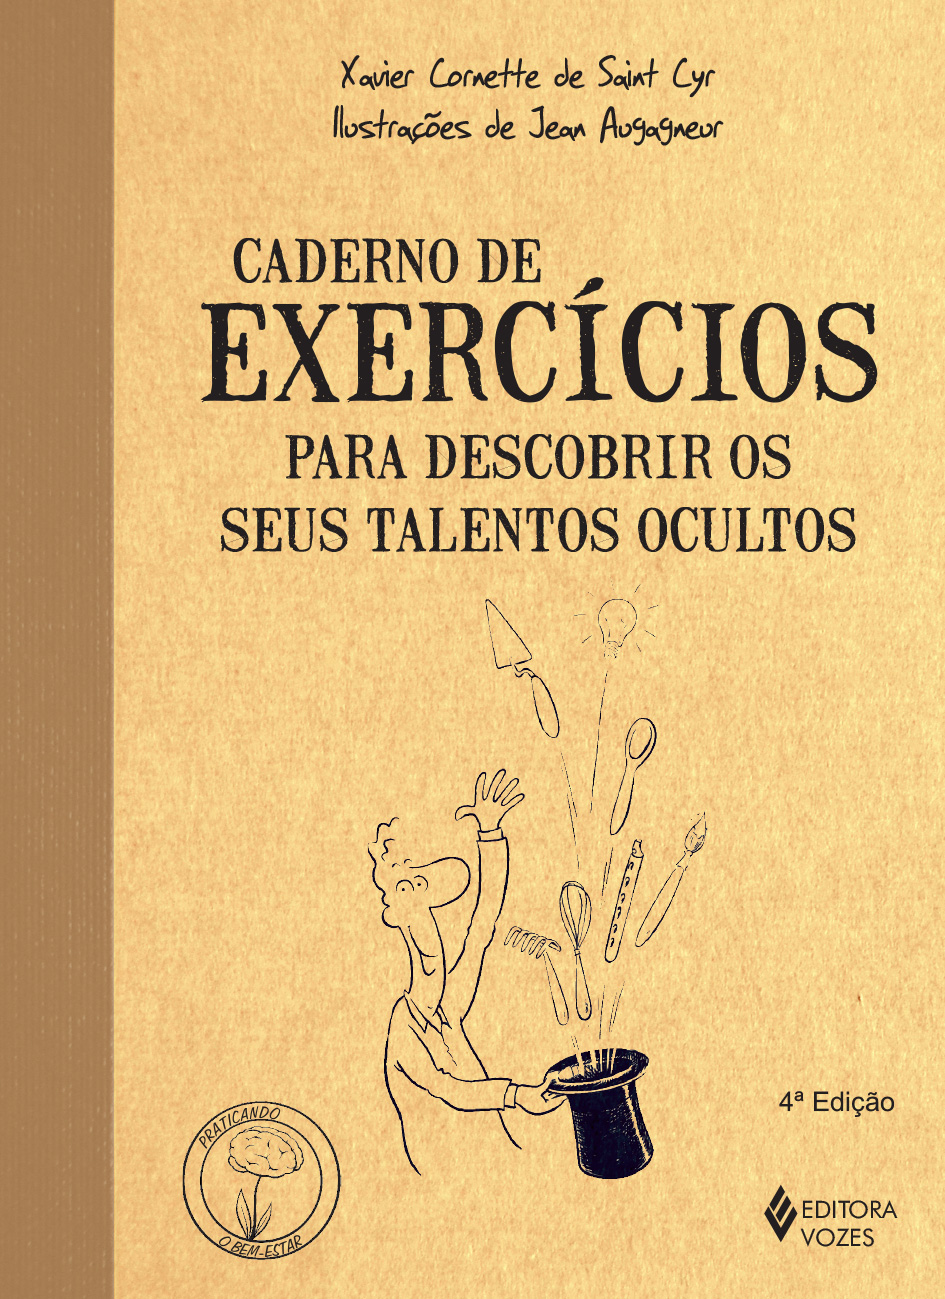 Caderno de Exercicios - Para Descobrir Seus Talentos Ocultos